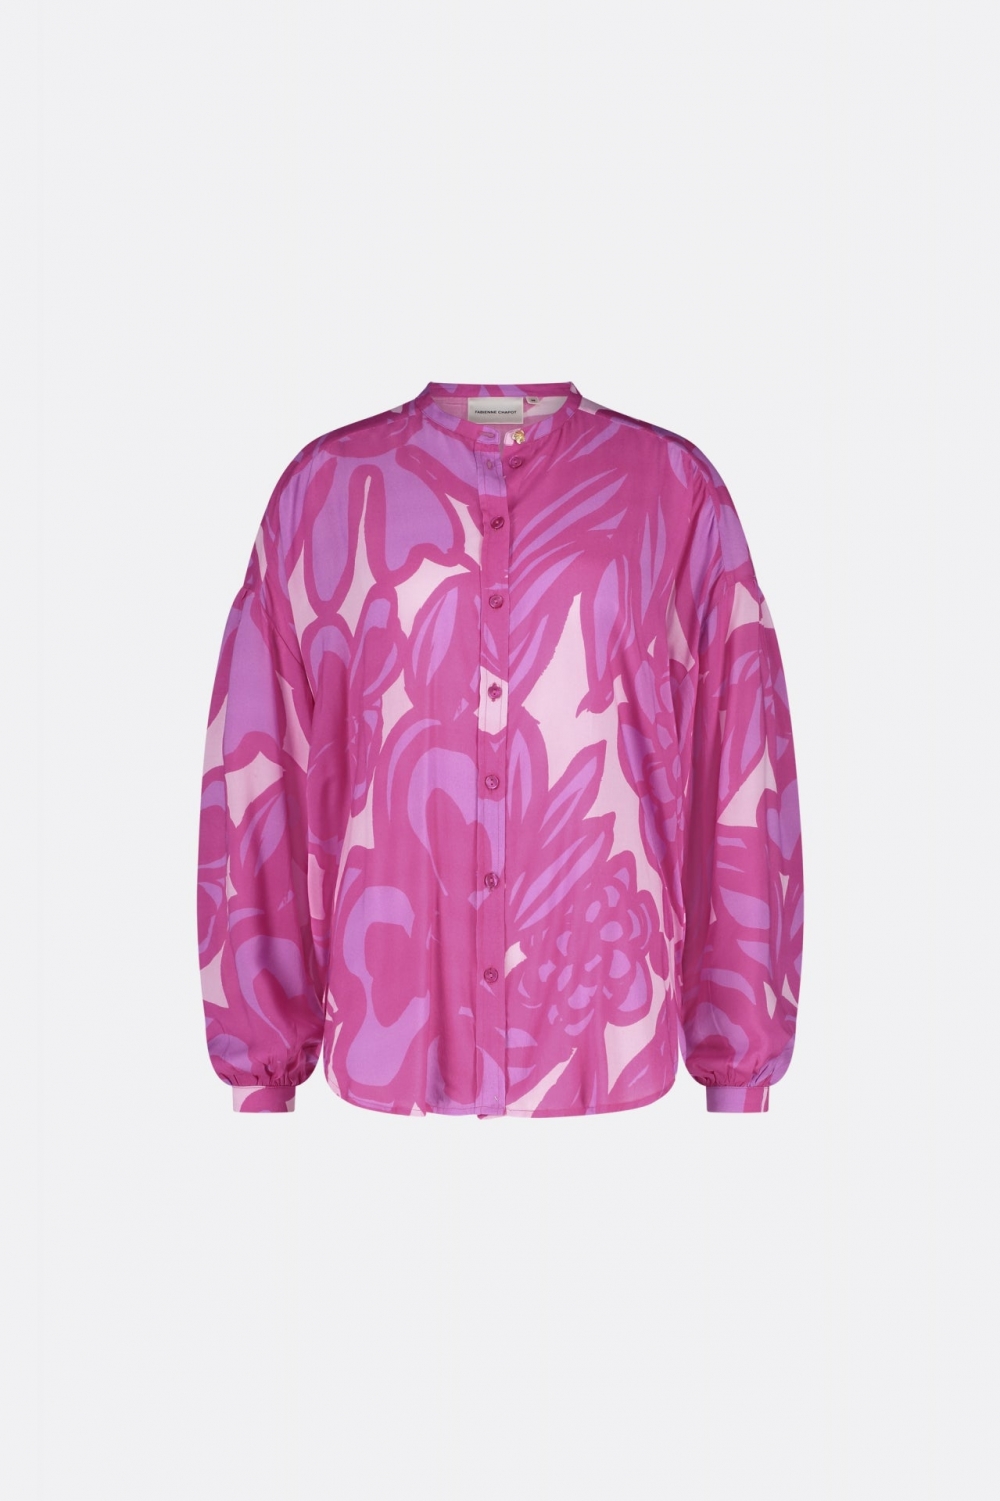 En sikkelig kul, oversized bluse fra Fabienne Chapot i et fantastisk rosa print. Blusen har rund hals, knappelukking, lav skuldersøm og ballongermer. Laget av 100% LENZING™ ECOVERO™.